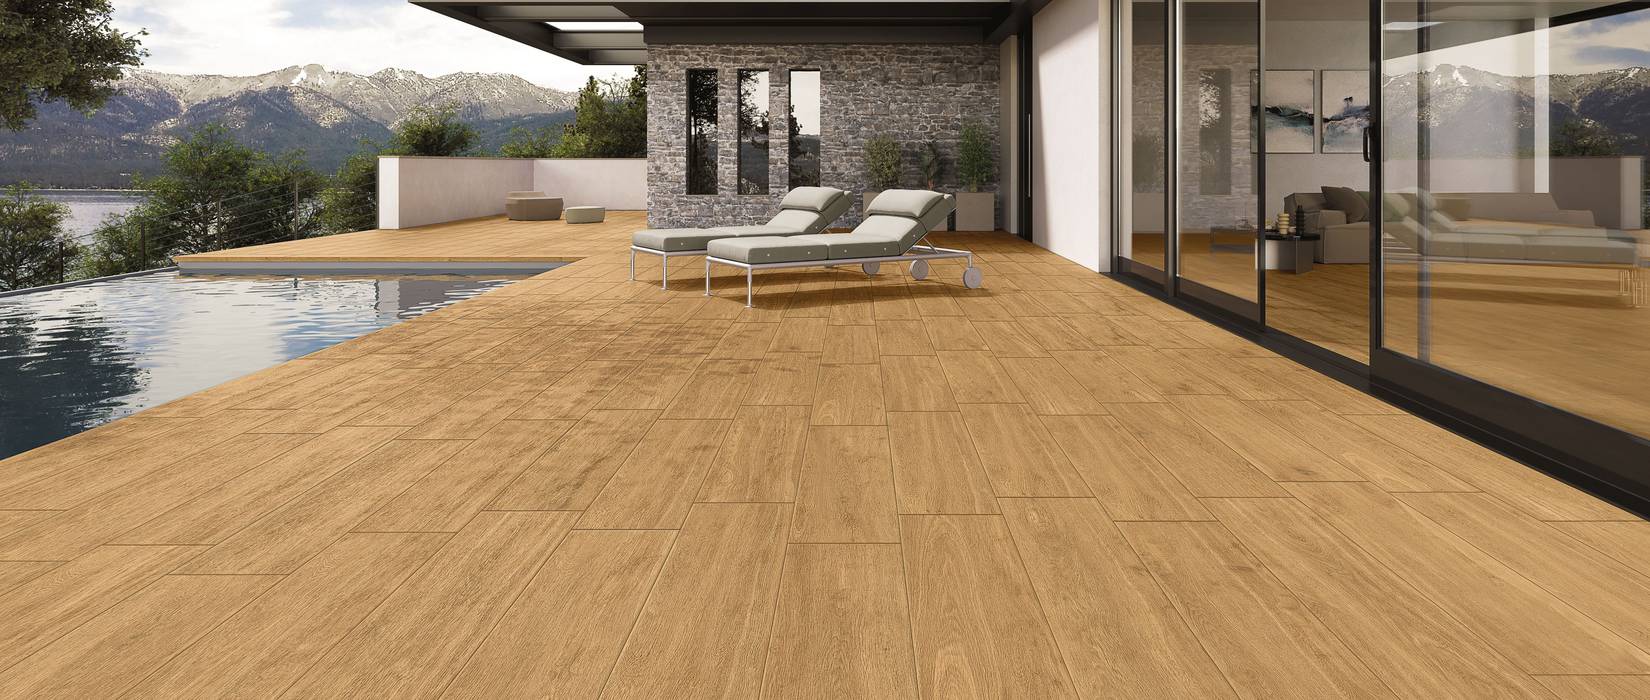 Wood effect outdoor floor